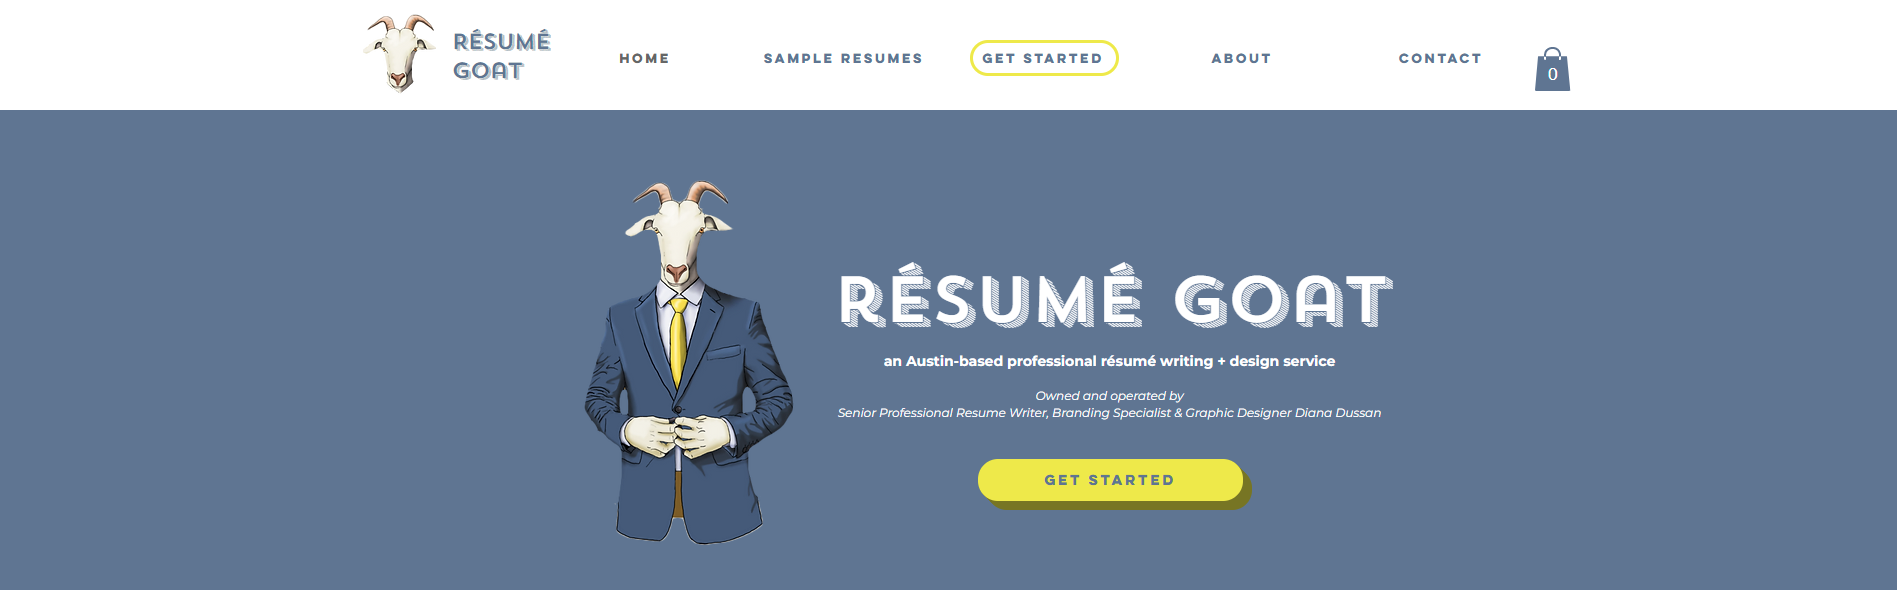 resume goat hero section